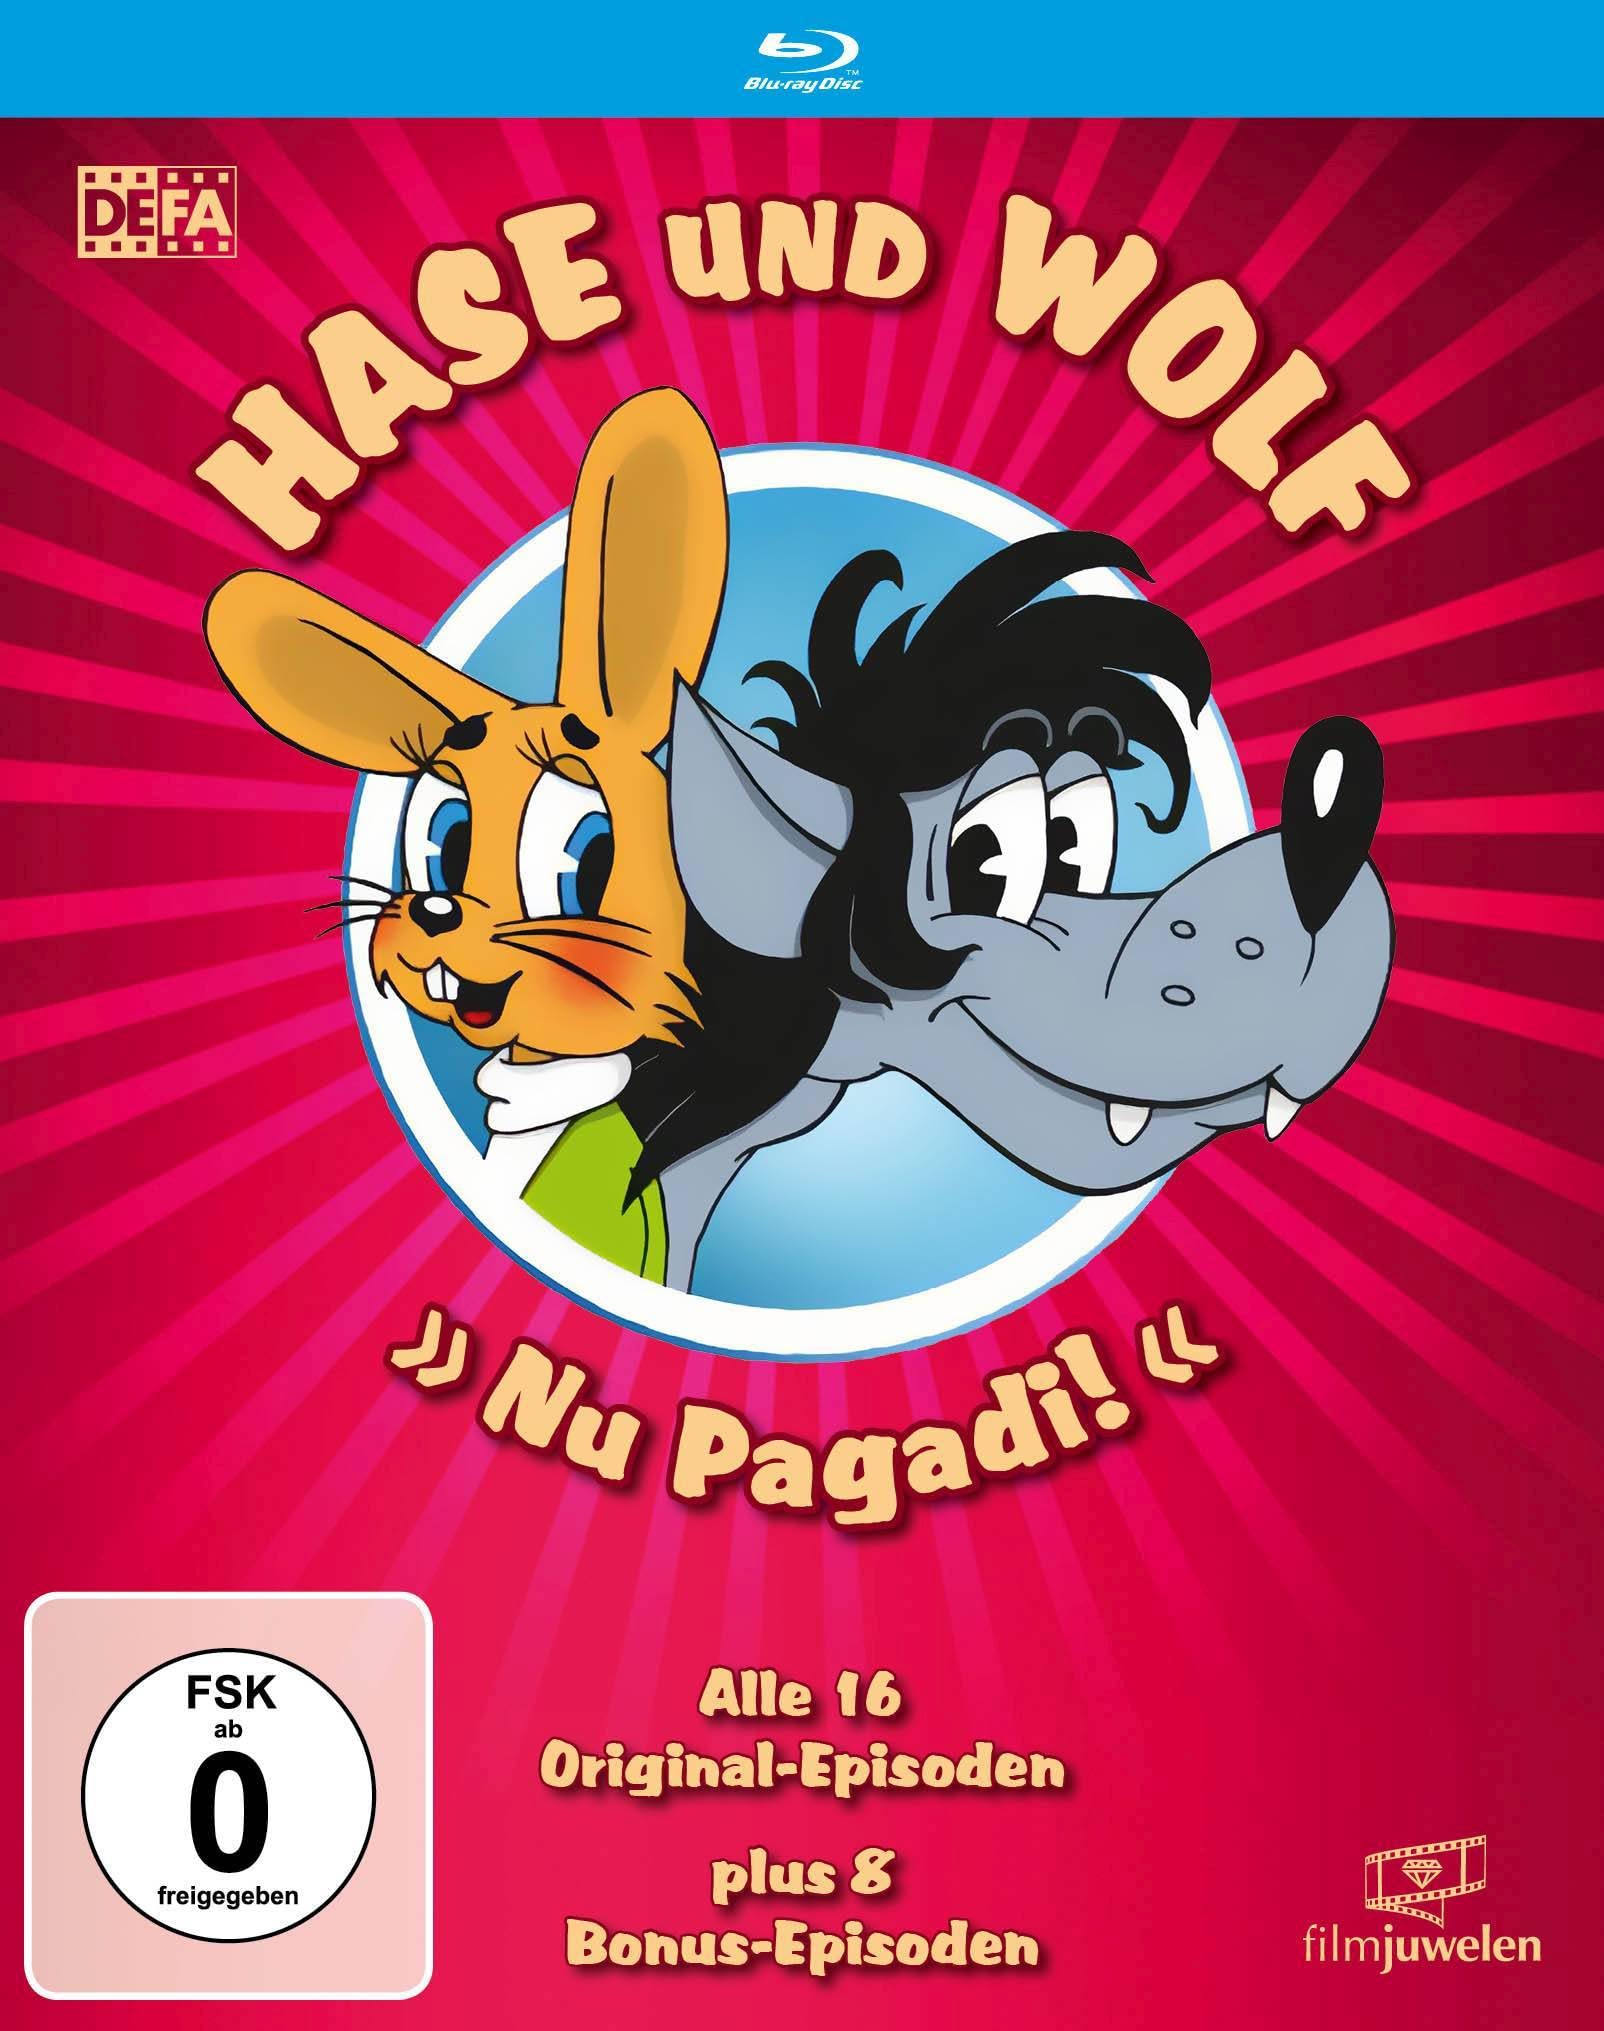 Hase und Wolf - Alle 16 Original-Episoden in HD - plus 8 Bonus-Episoden (Nu Pagadi! / Na warte!) (DEFA Filmjuwelen) (Blu-ray)